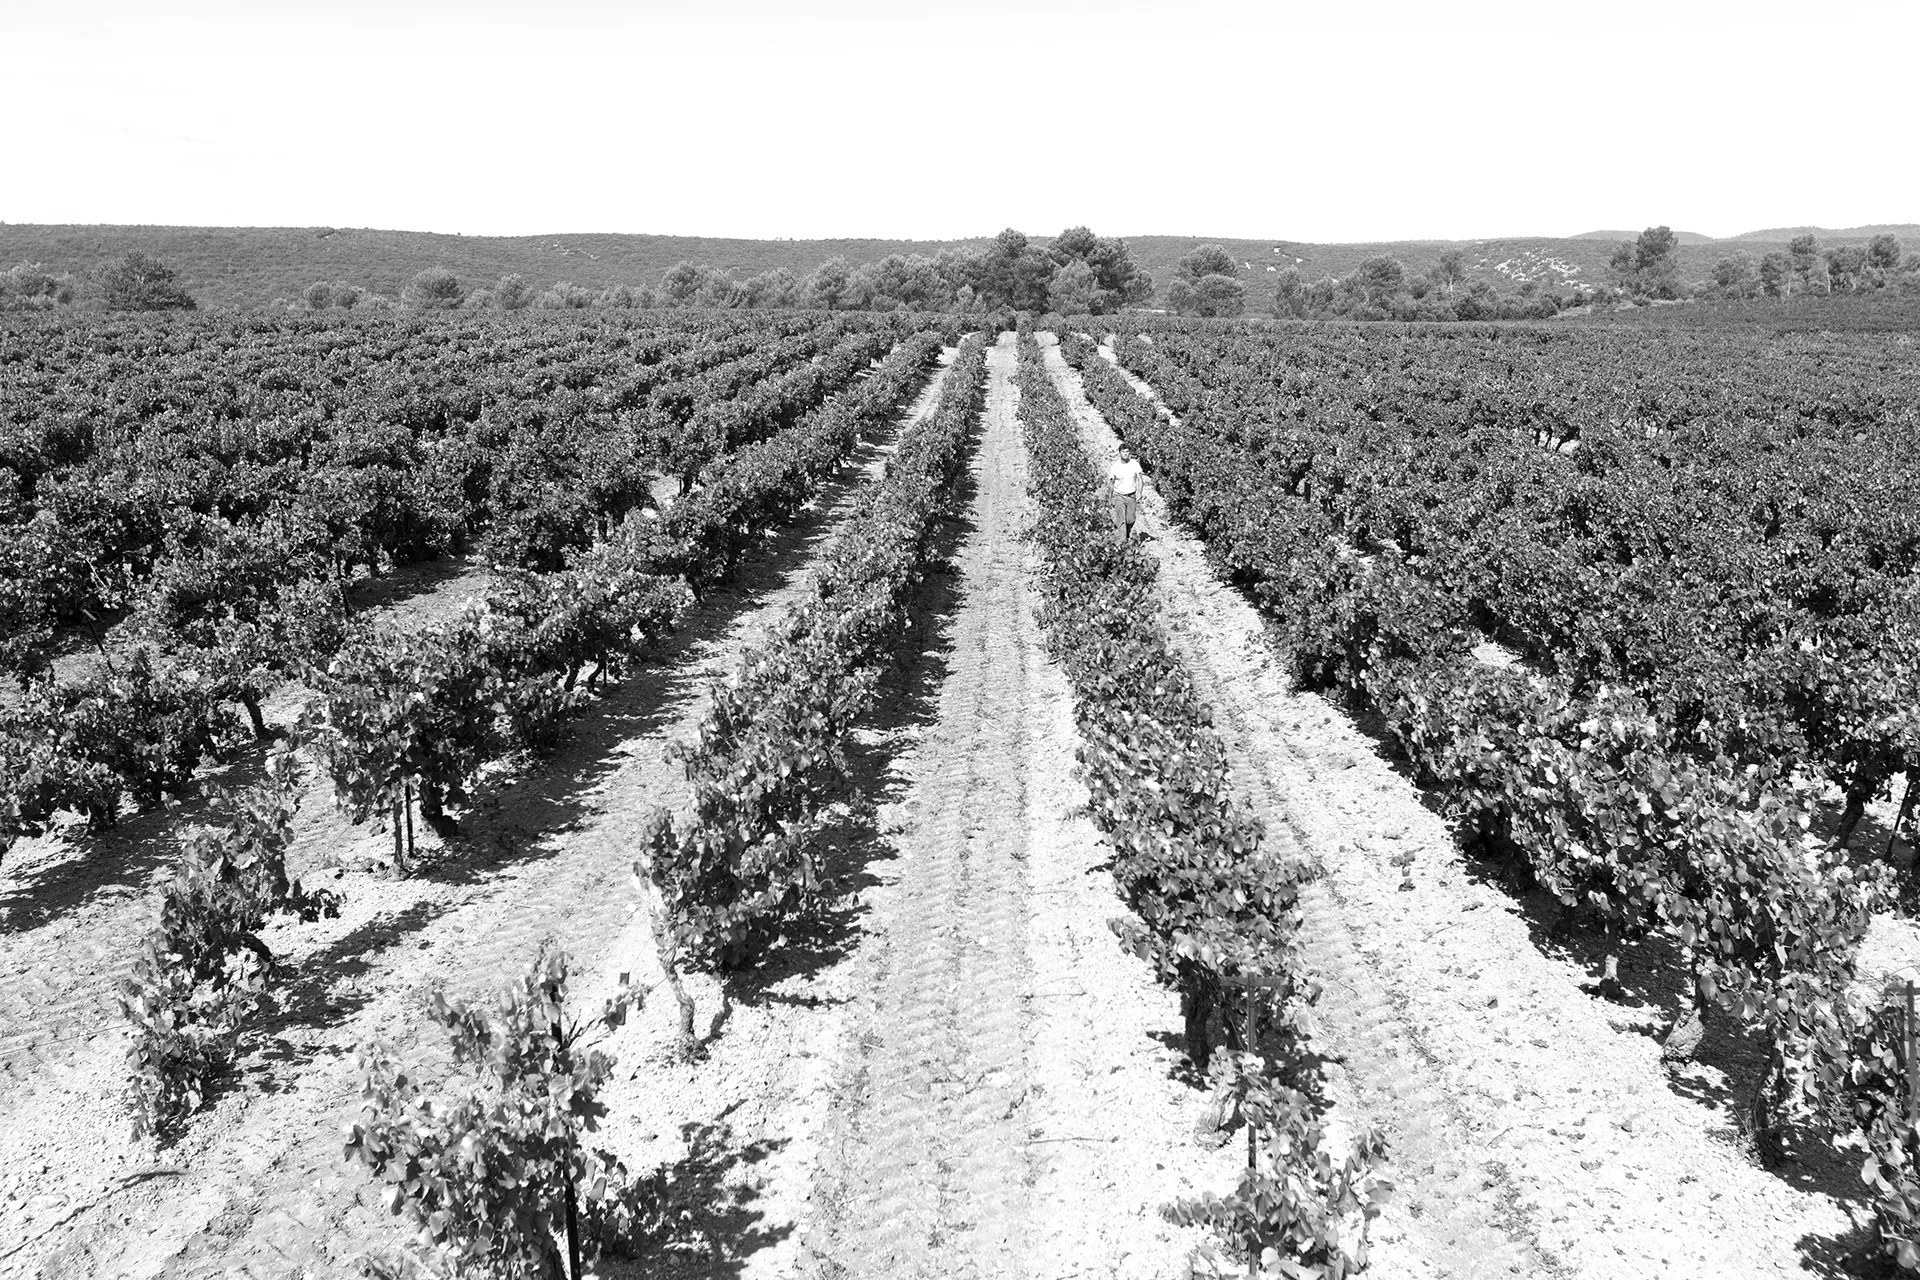 Le vignoble du Domaine Masson se trouve à 350 mètres d’altitude au milieu de la forêt. Un domaine bio familial, 20 hectares au cœur du var.